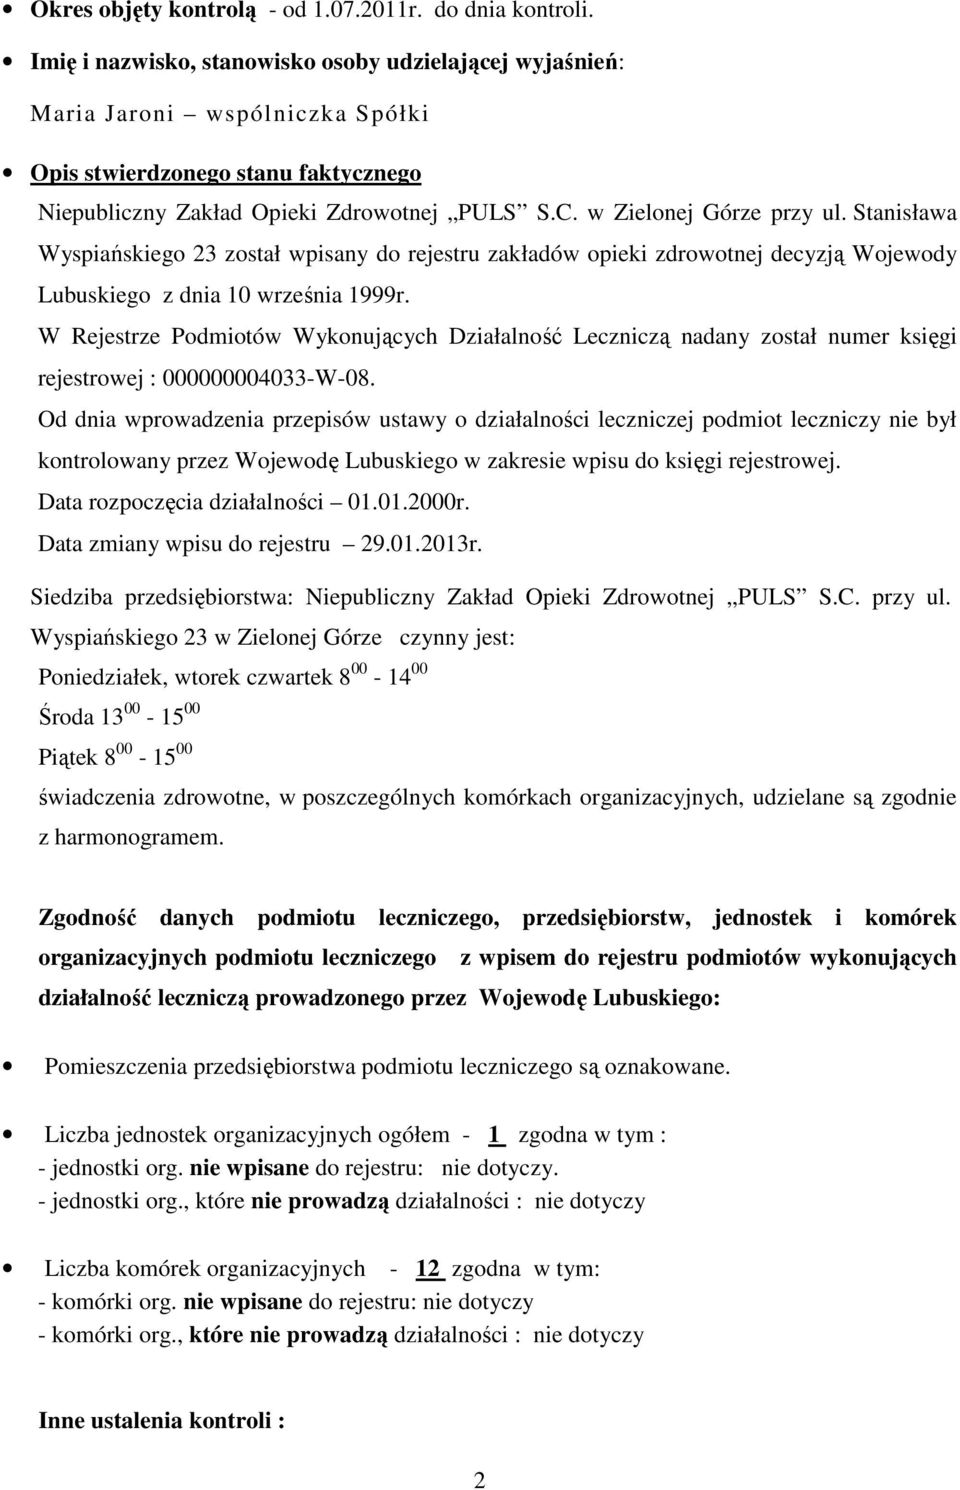 Stanisława Wyspiańskiego 23 został wpisany do rejestru zakładów opieki zdrowotnej decyzją Wojewody Lubuskiego z dnia 10 września 1999r.